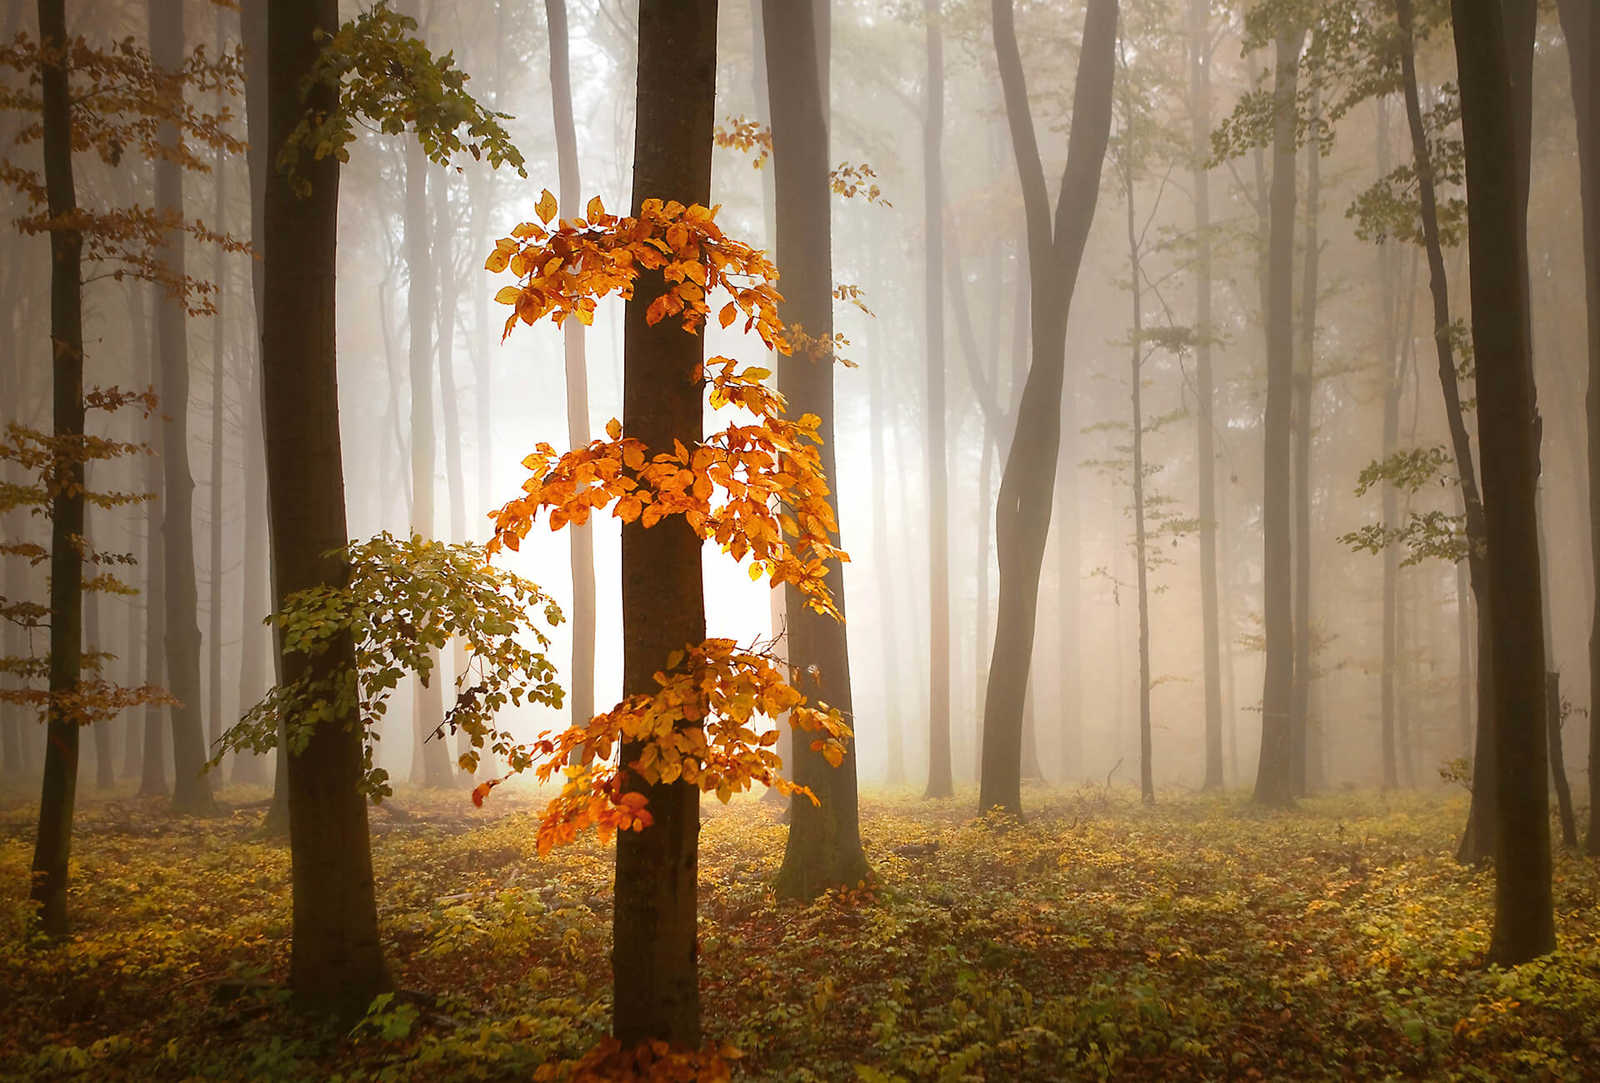             Fototapete Wald im Herbst mit Nebel – Orange, Braun
        